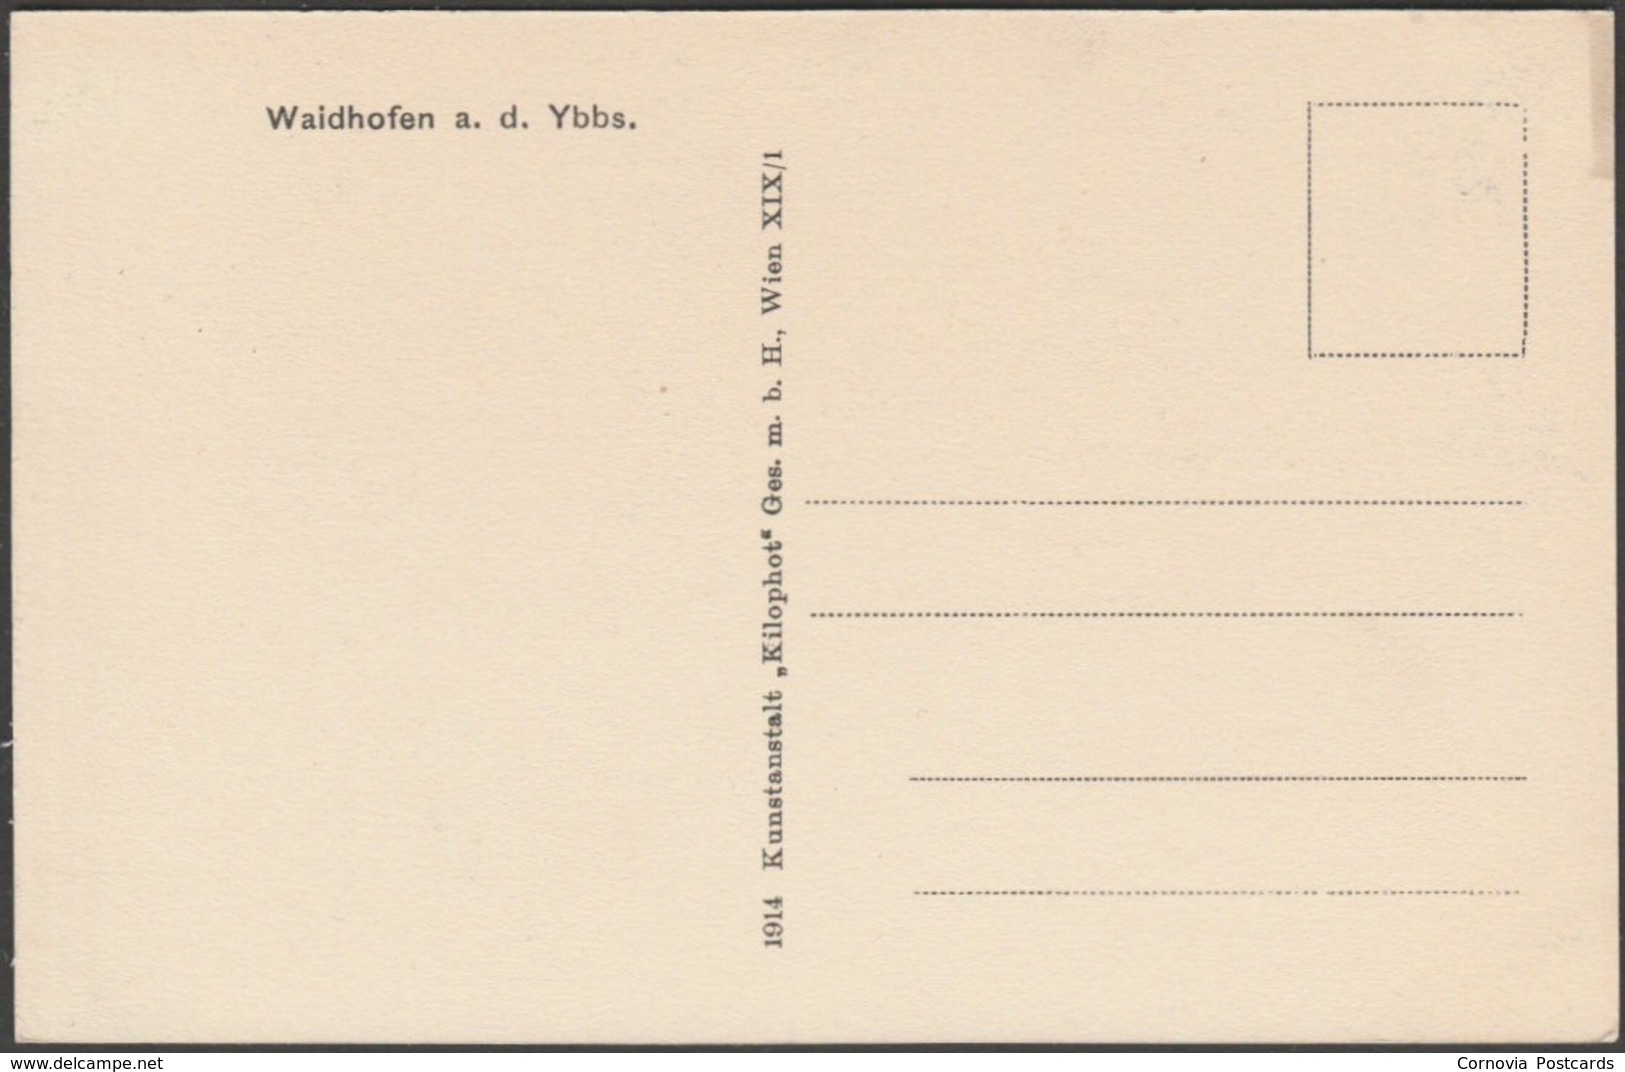 Waidhofen An Der Ybbs, Niederösterreich, 1914 - Kilophot AK - Waidhofen An Der Ybbs